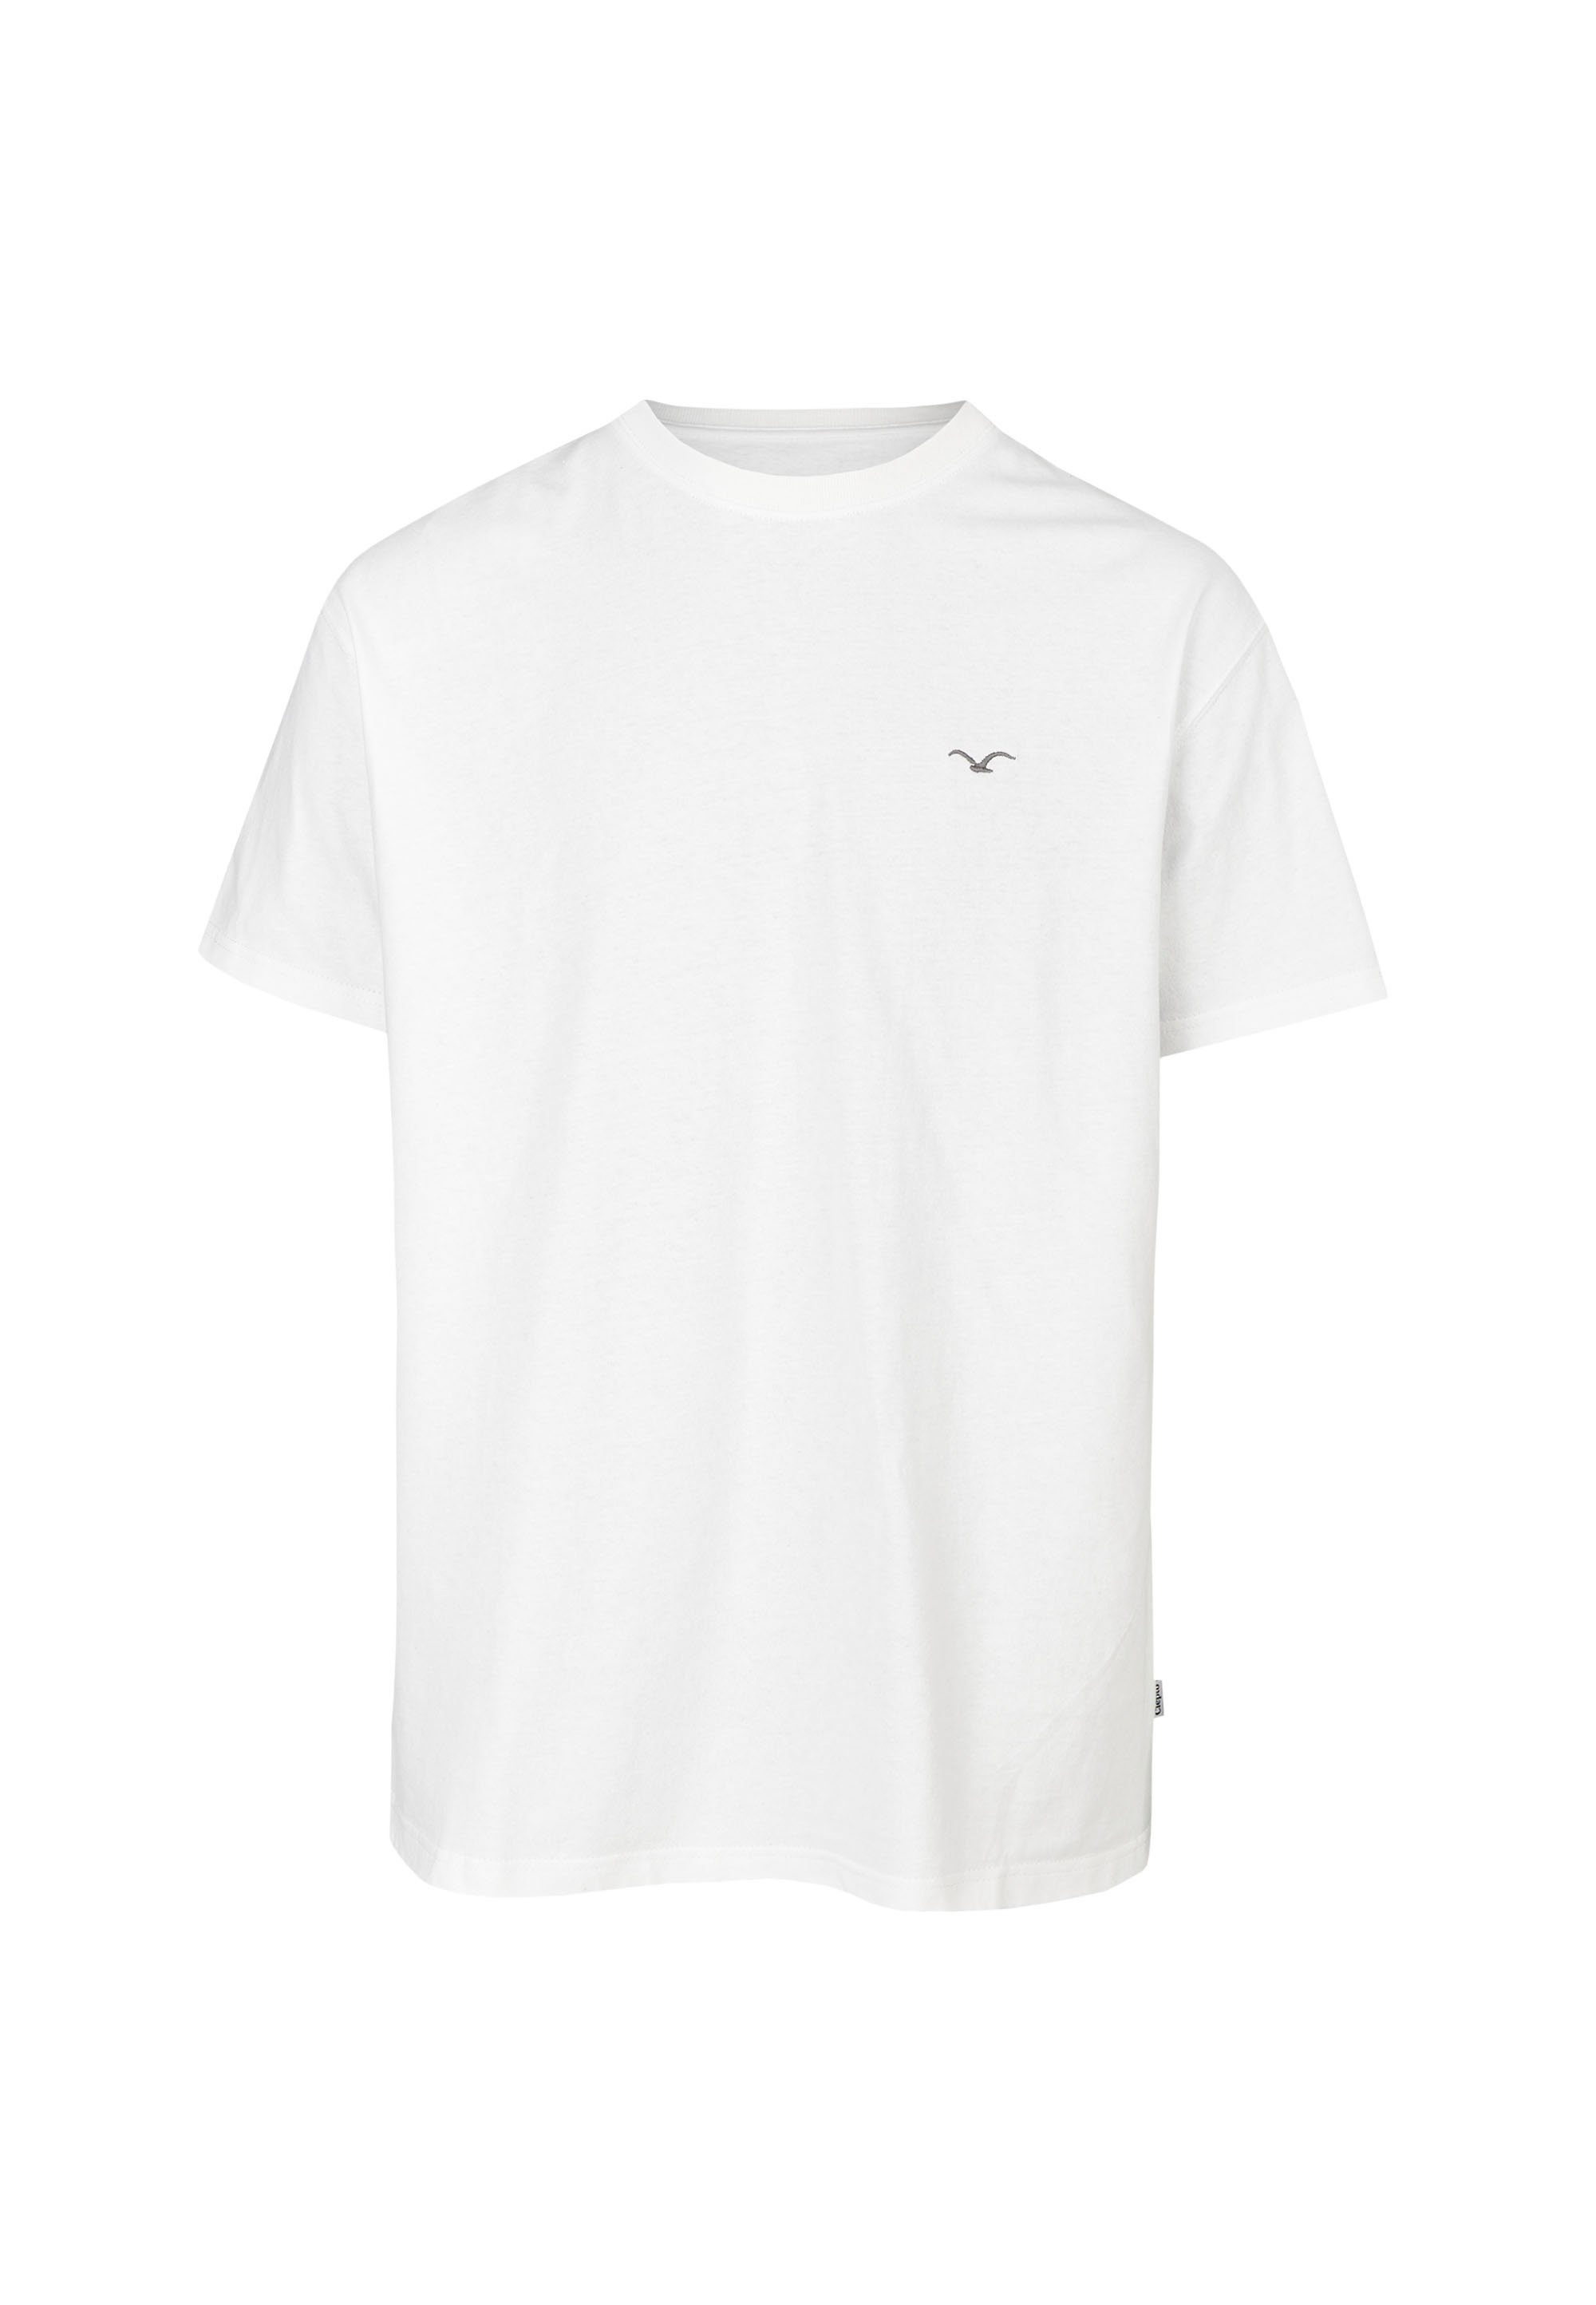 Boxy Design schlichtem Ligull T-Shirt Cleptomanicx in weiß 2